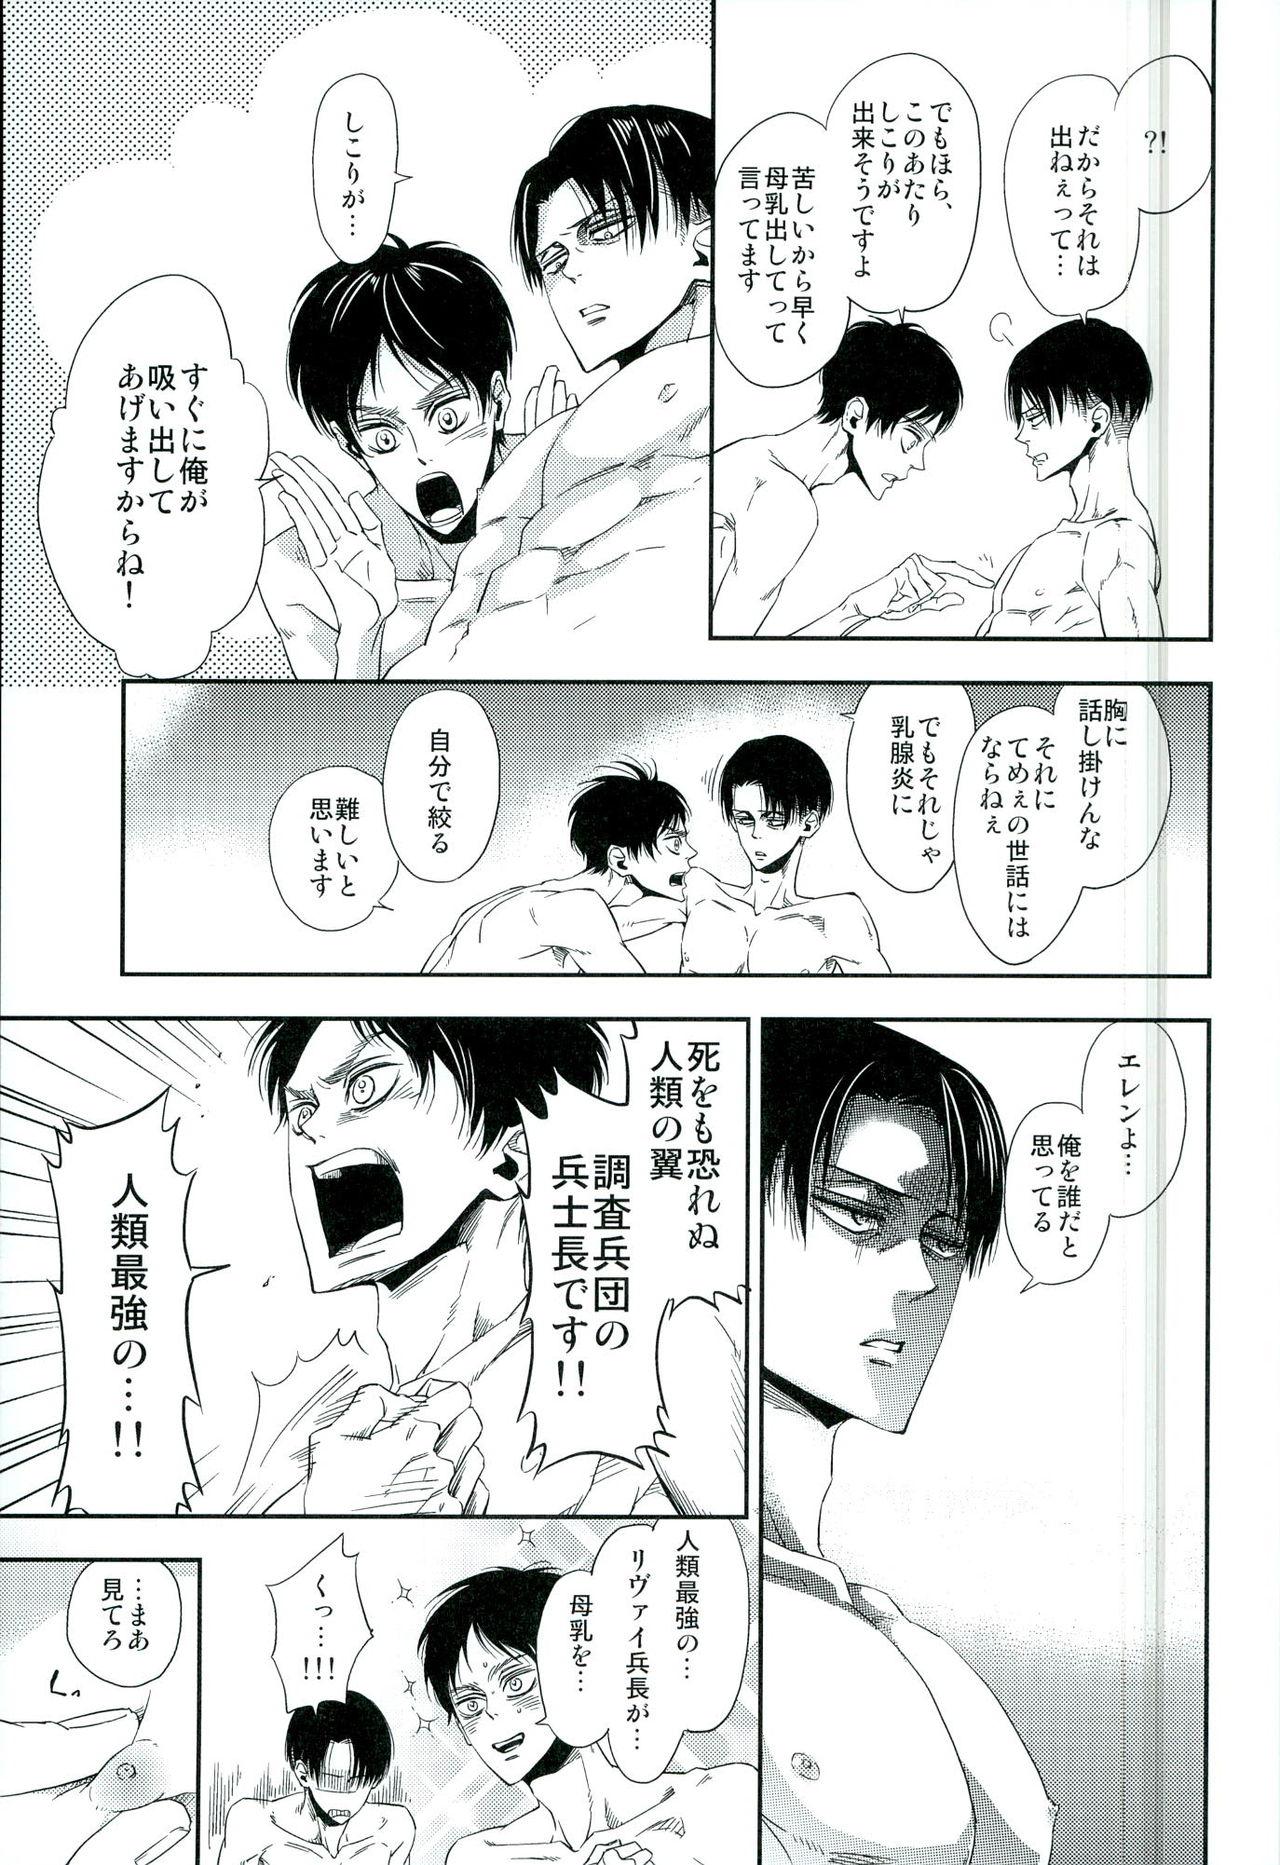 Closeup 兵長のおっぱいから母乳が出るところが見たい! - Shingeki no kyojin Gay Blondhair - Page 8